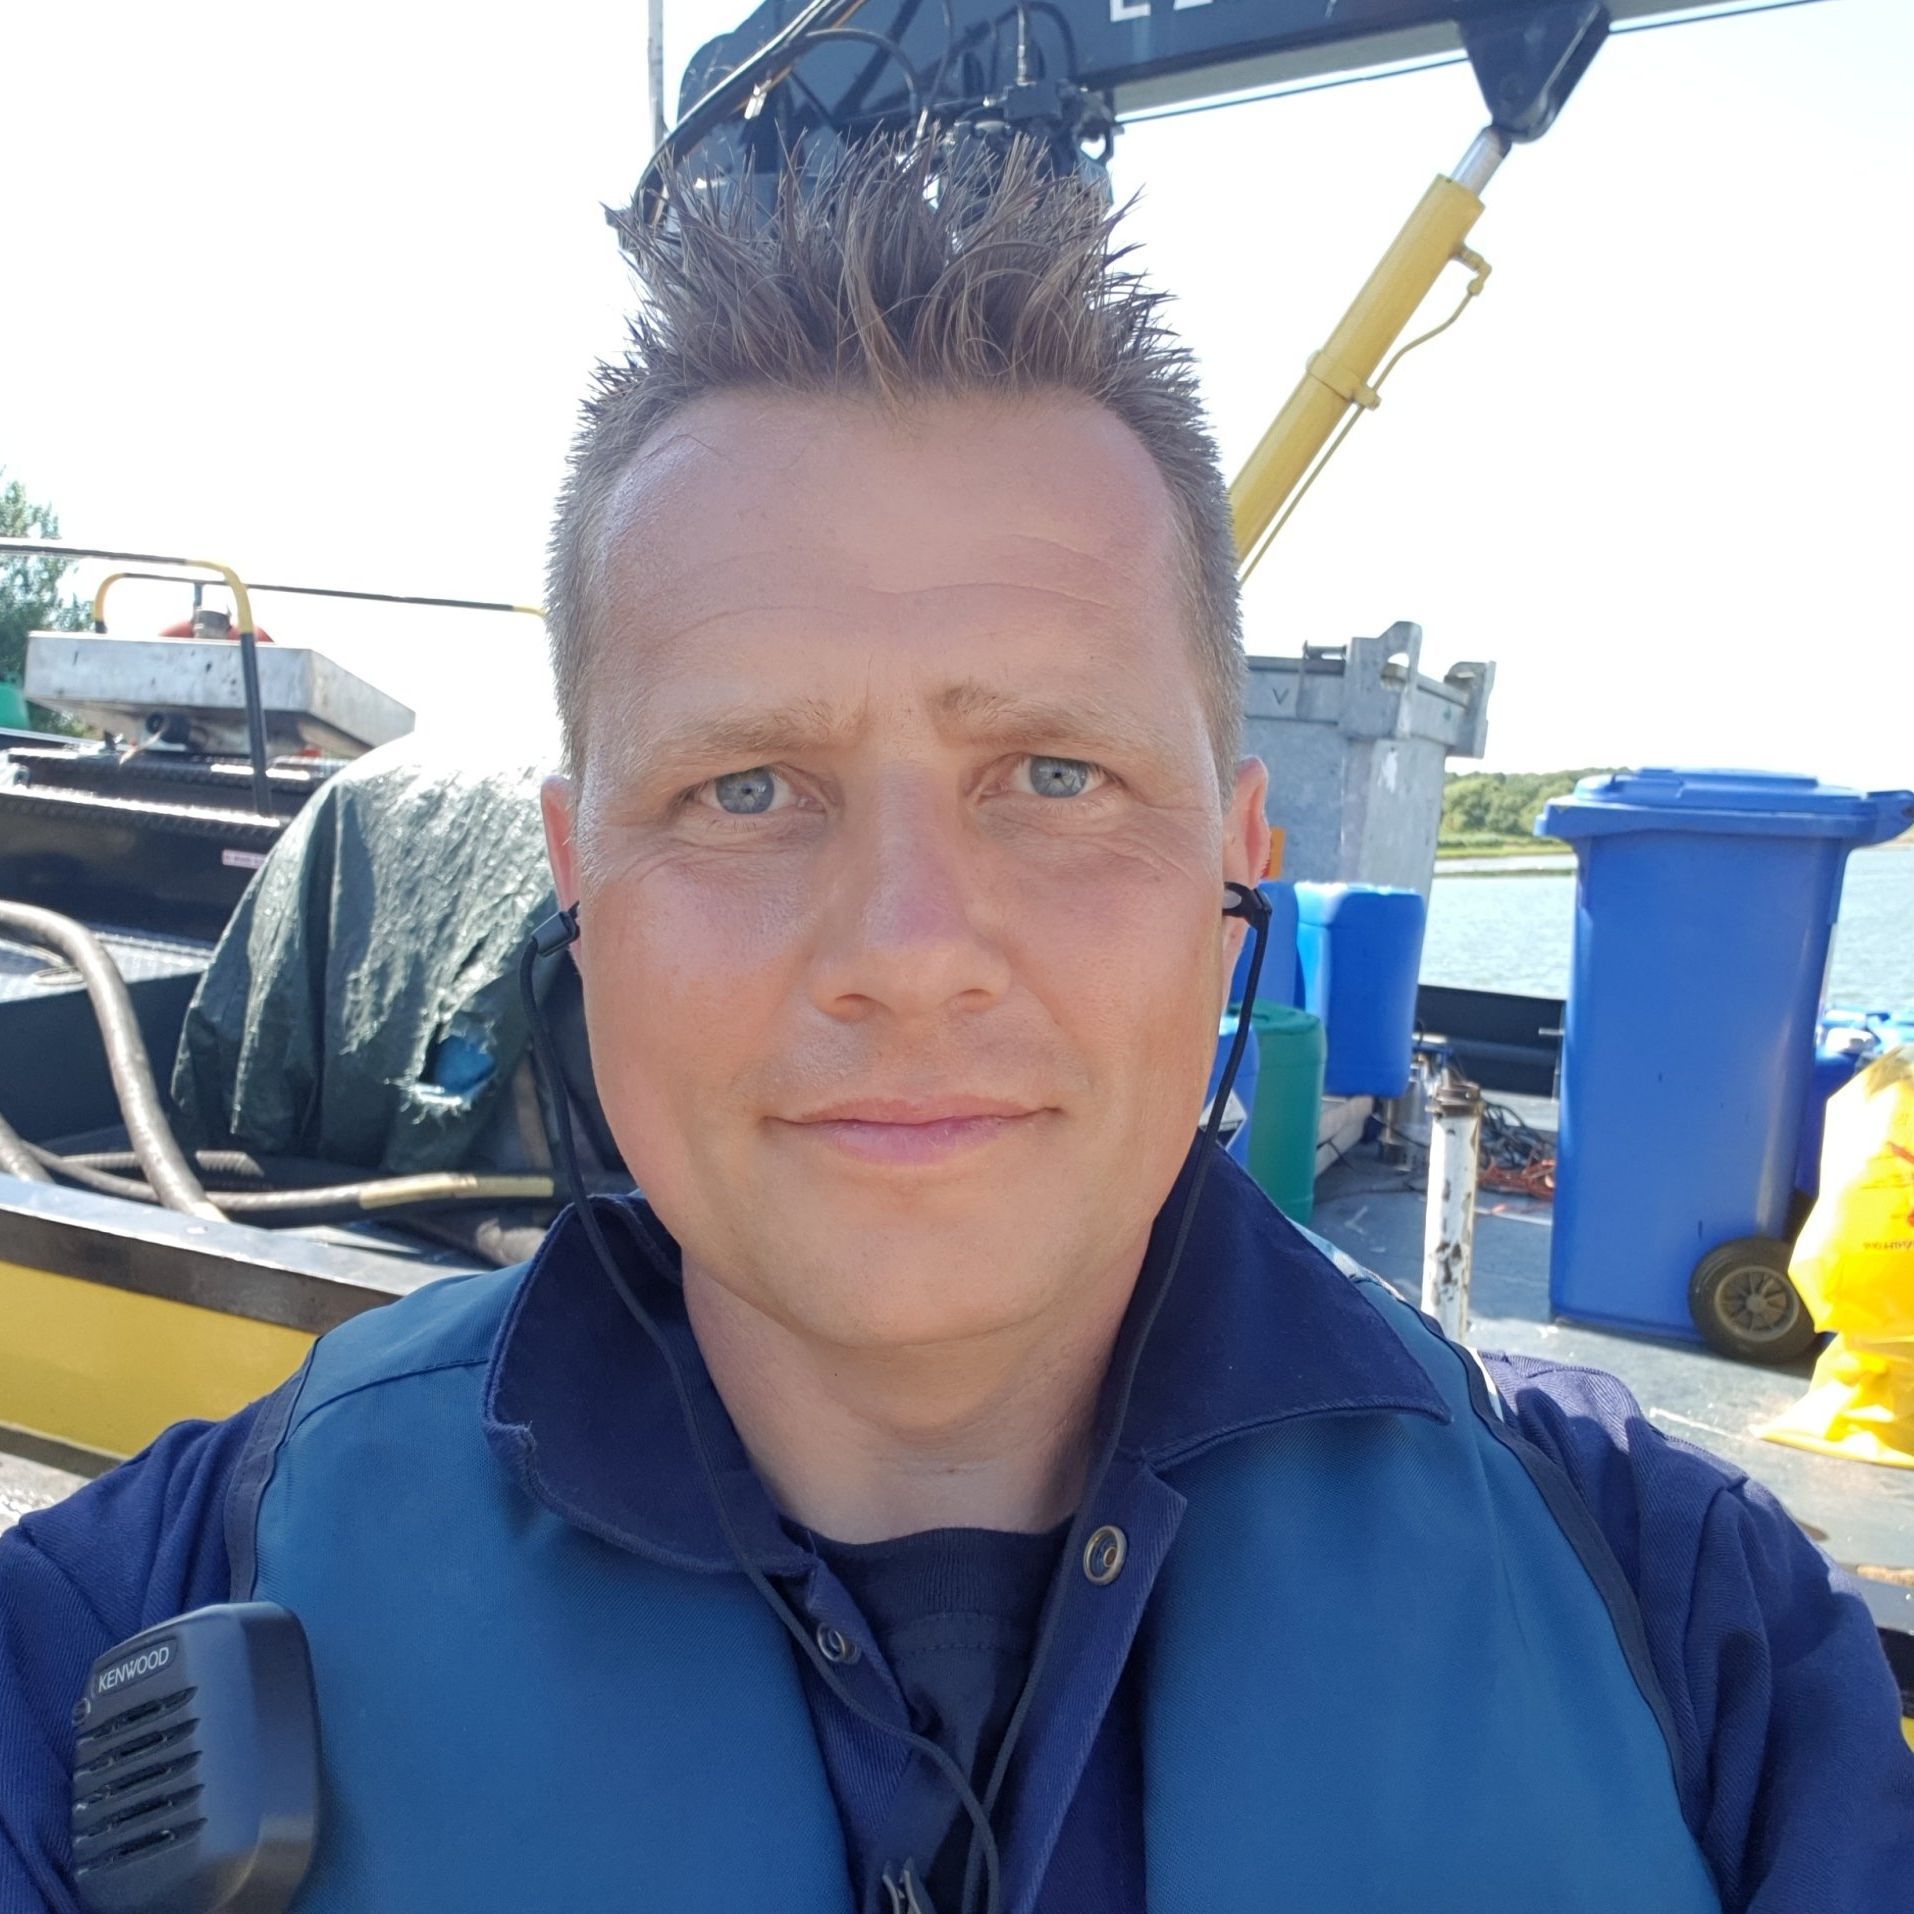 Patrick van der Linden, the owner of marine firefighting